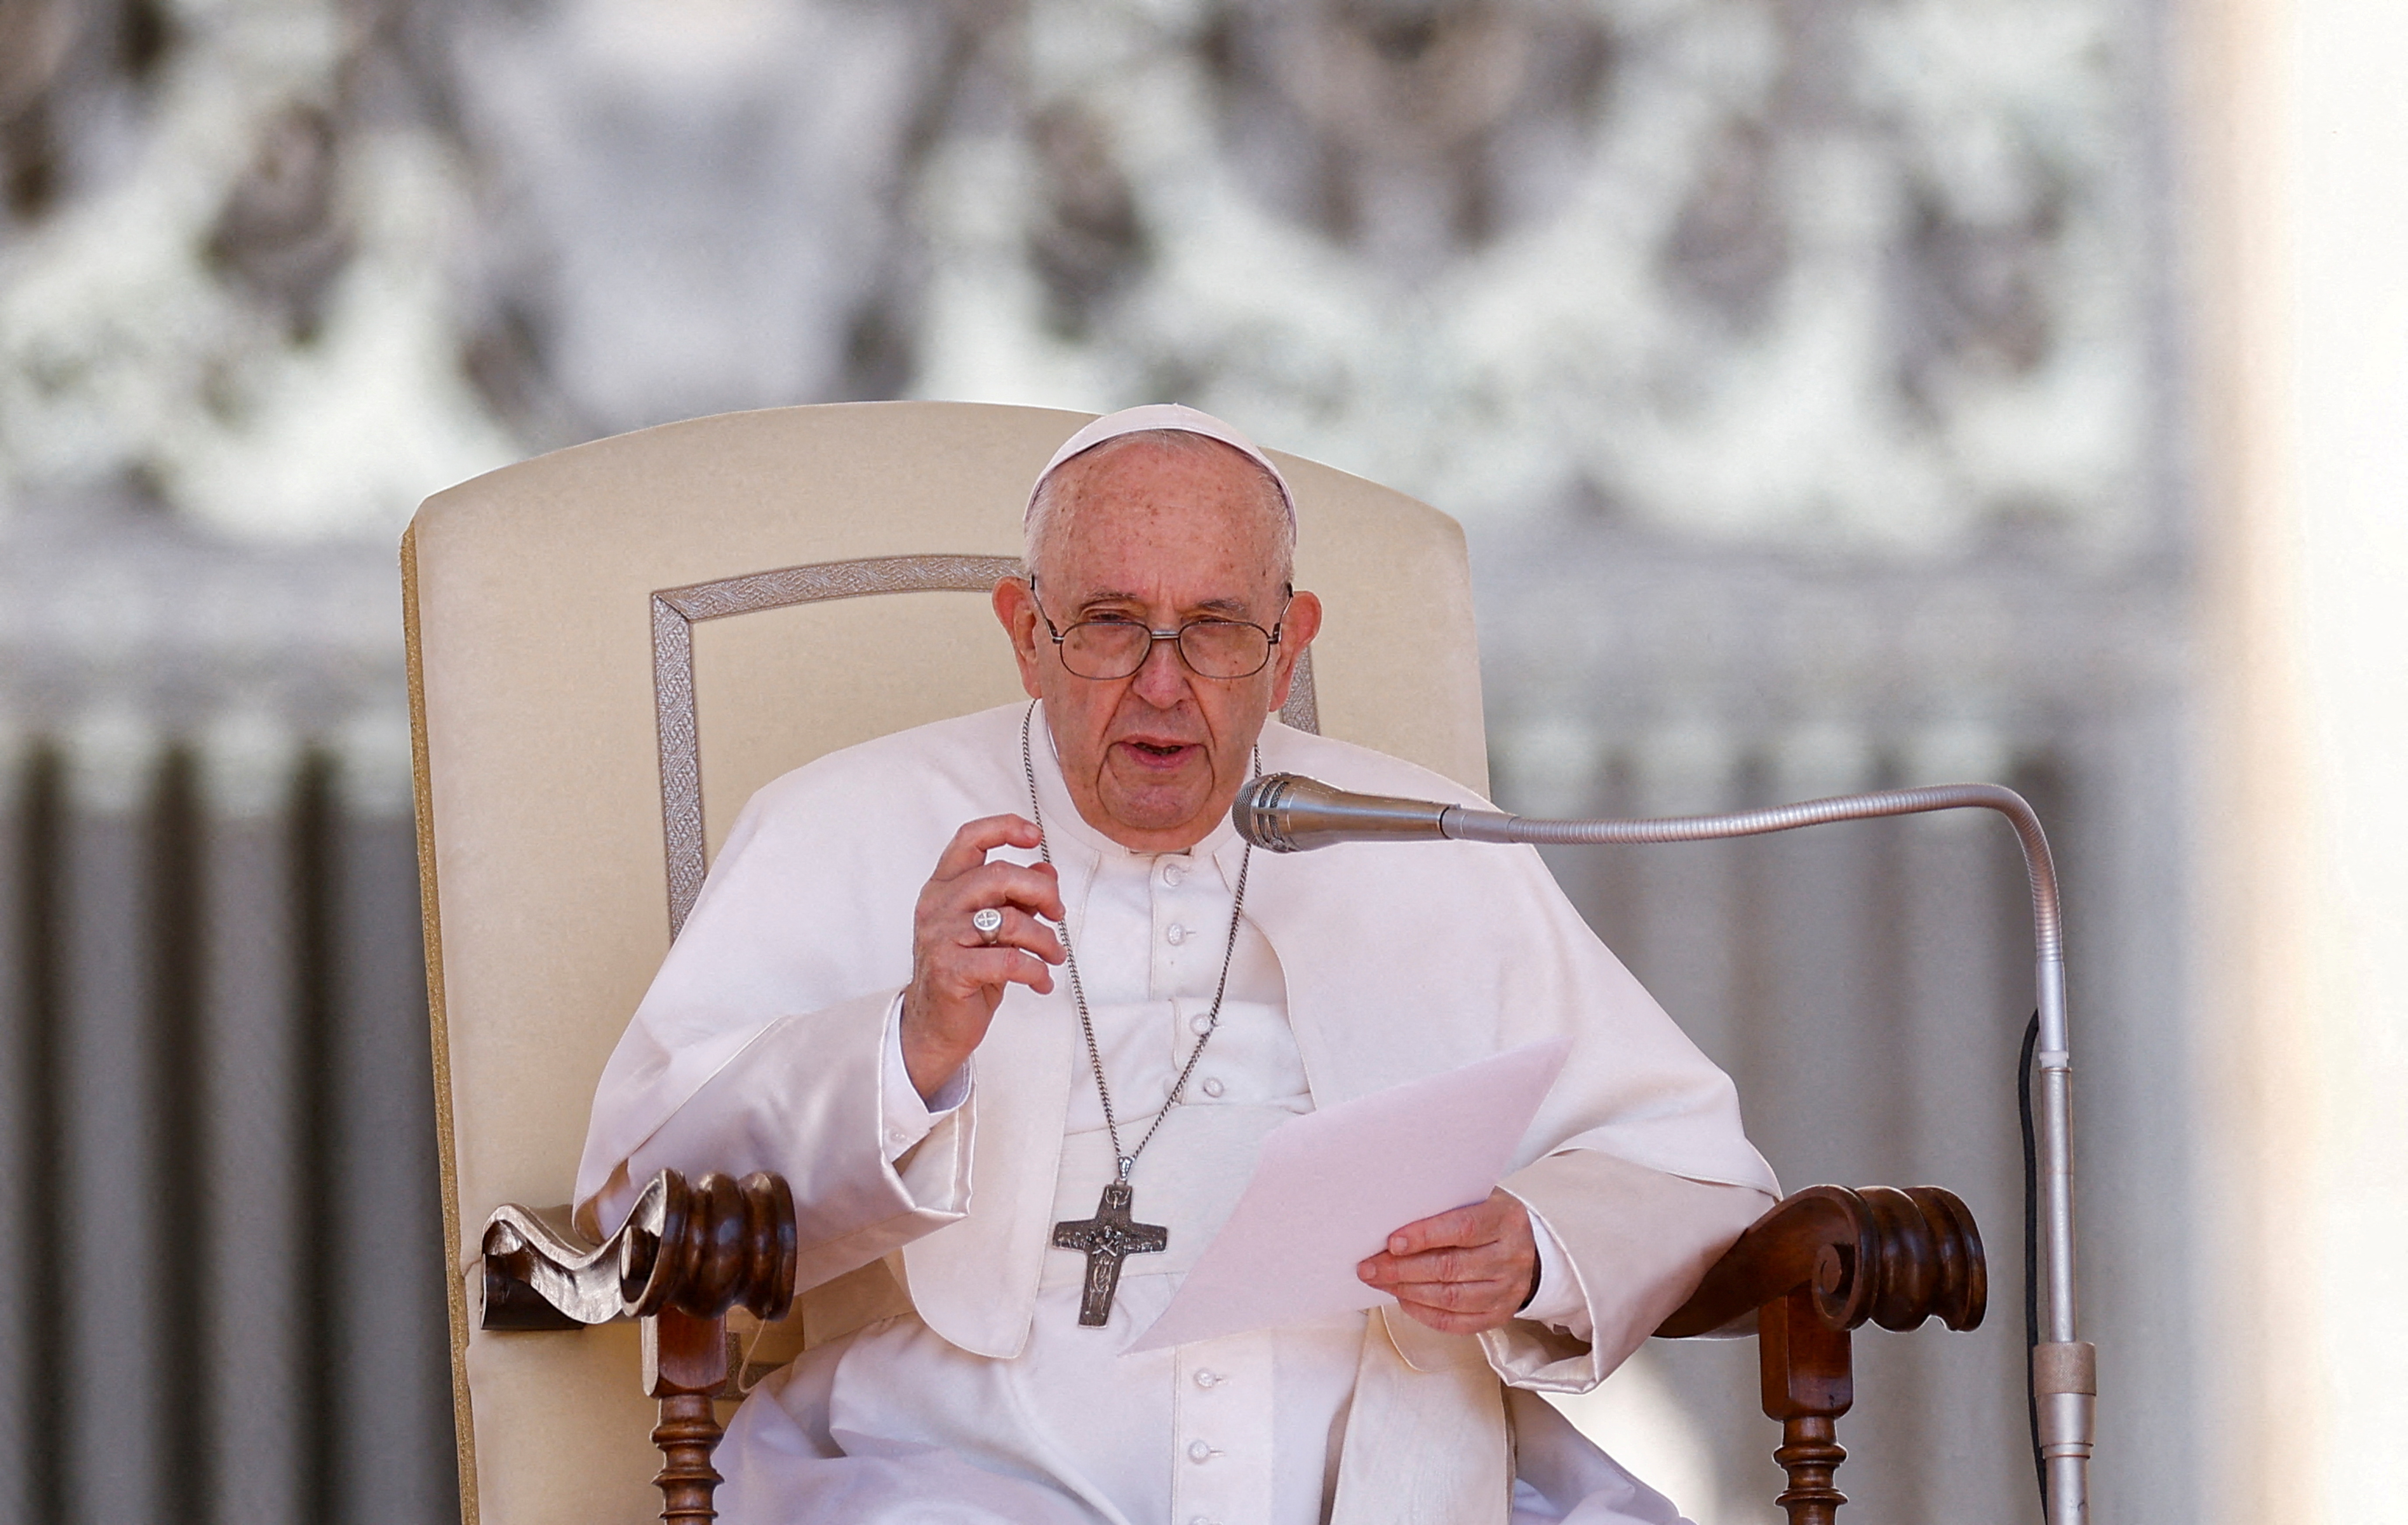 FOTO DE ARCHIVO: El papa Francisco habla durante la audiencia general semanal en el Vaticano, el 11 de mayo de 2022. REUTERS/Guglielmo Mangiapane